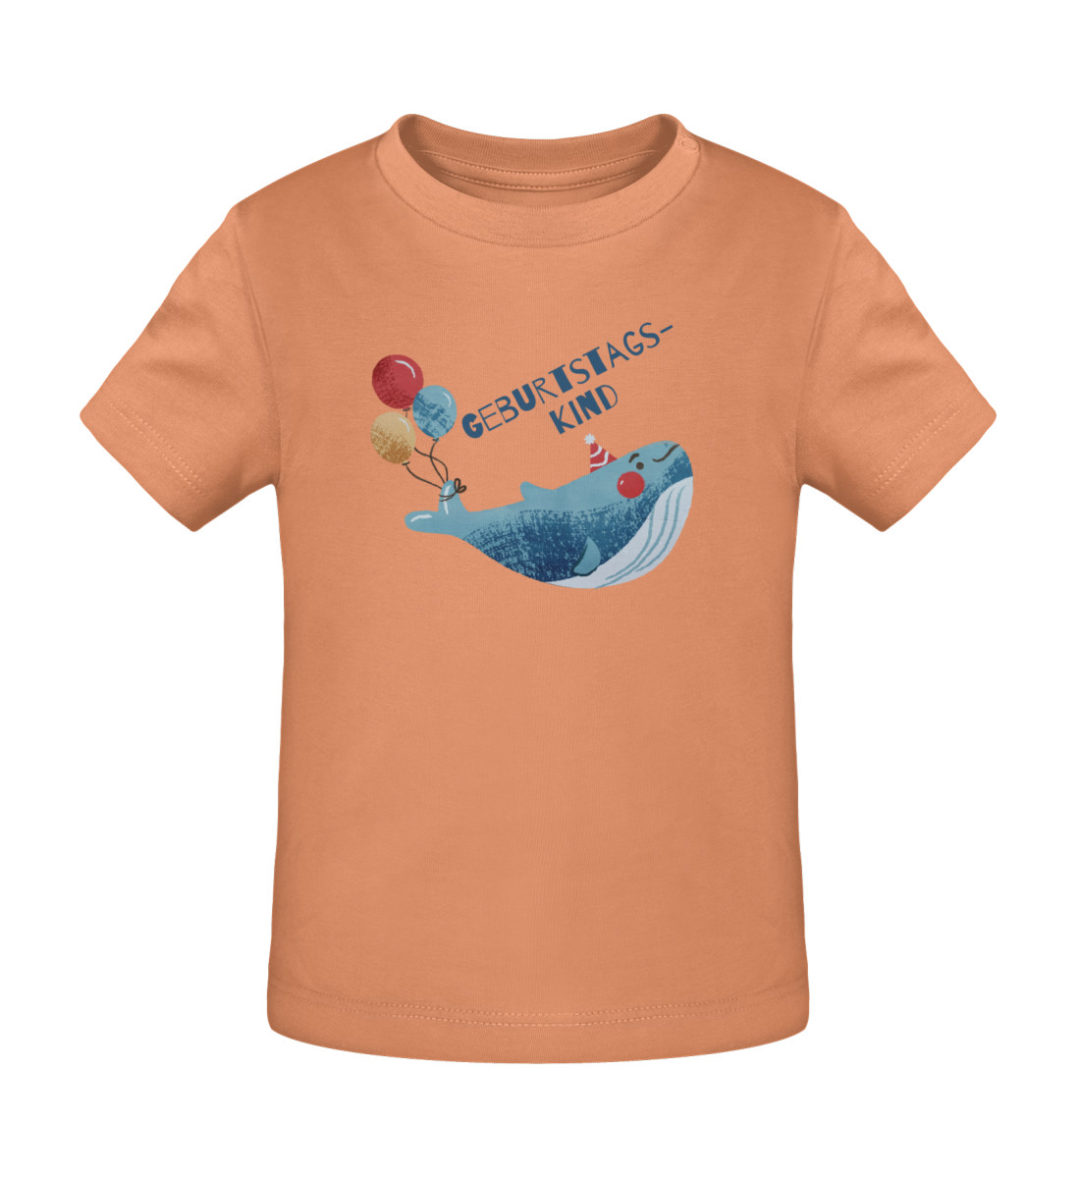 Geburtstagskind - Baby Creator T-Shirt ST/ST-7101